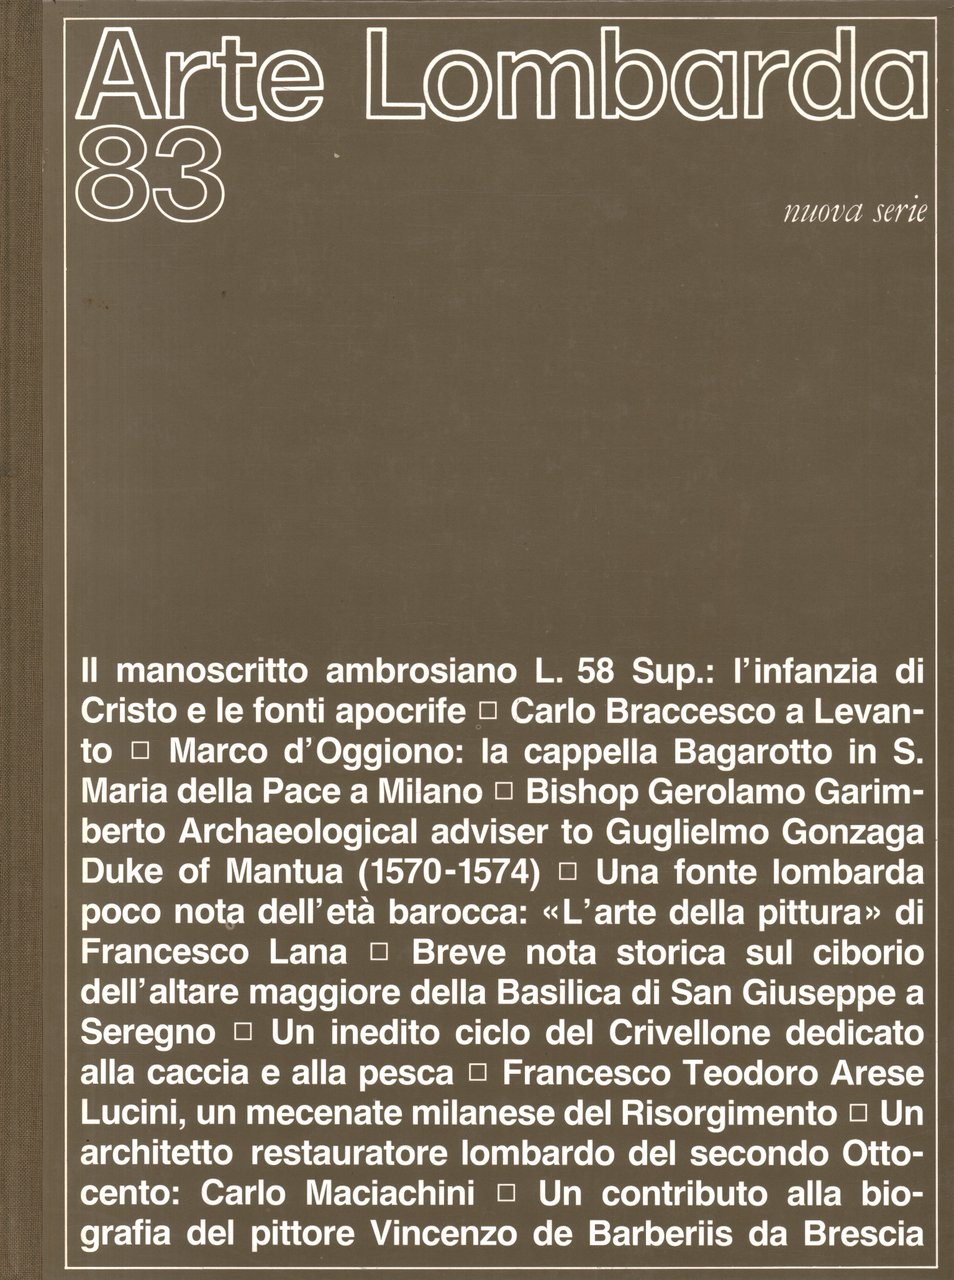 Arte Lombarda nuova serie: rivista di Storia dell'Arte (1987-n.83)